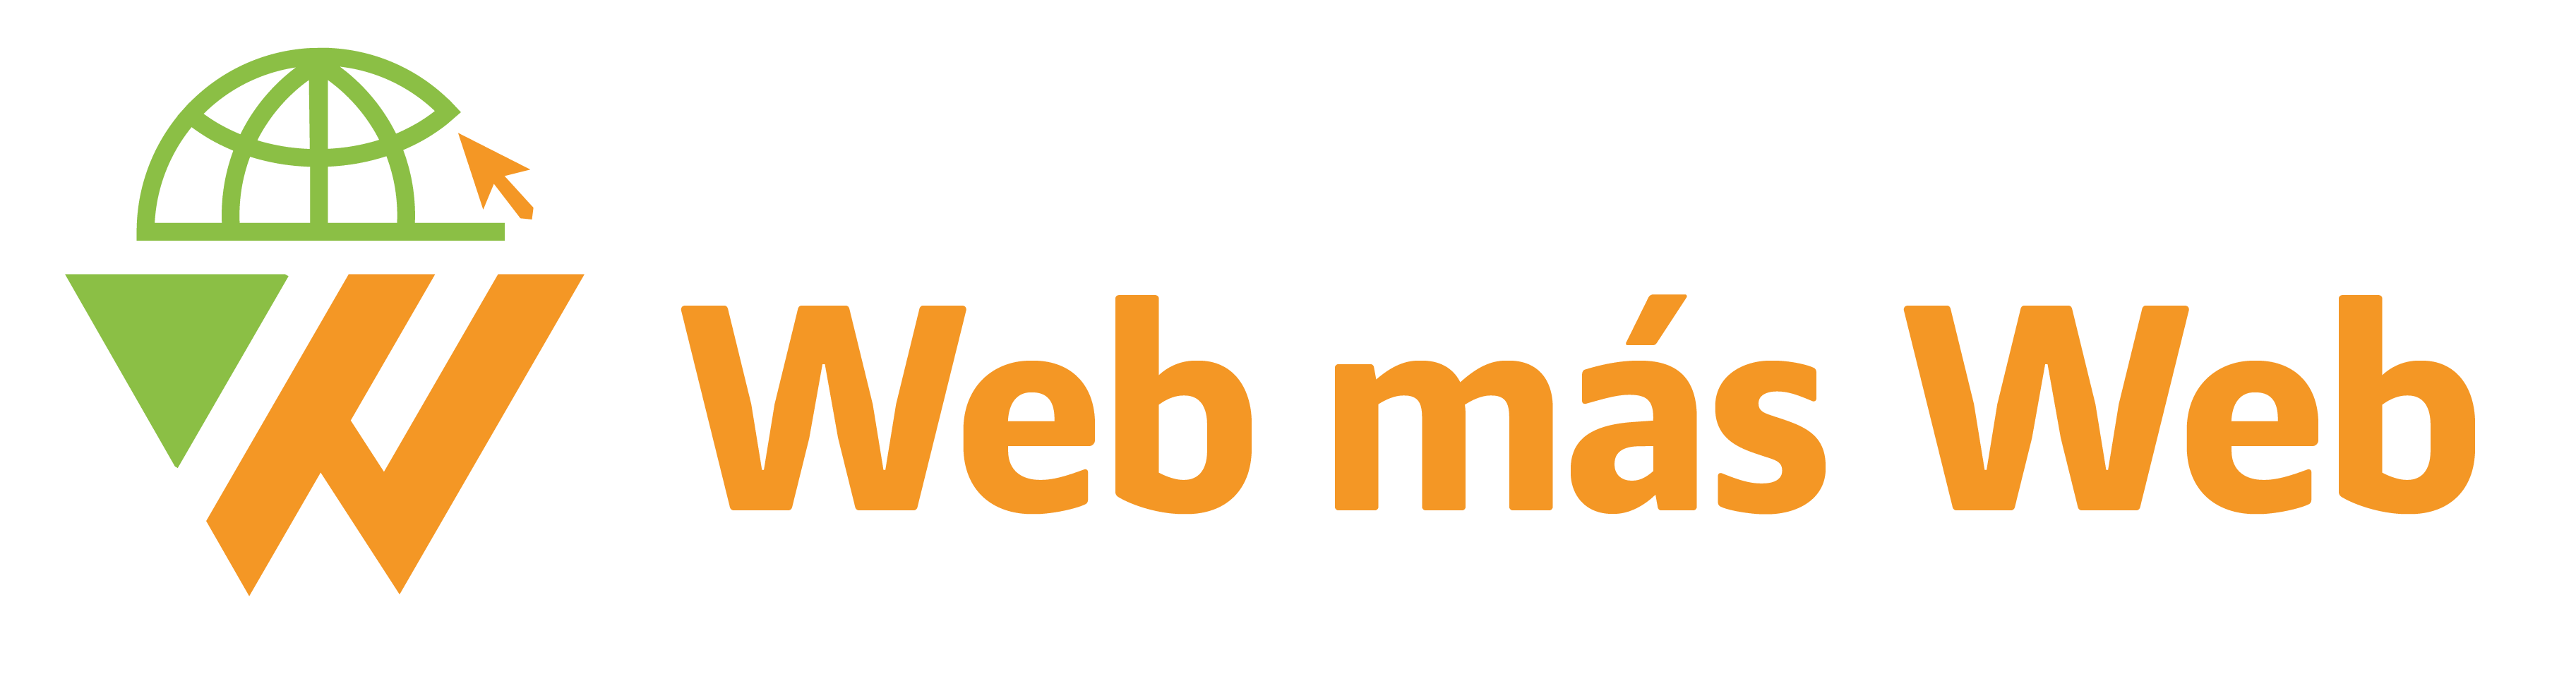 Web más Web